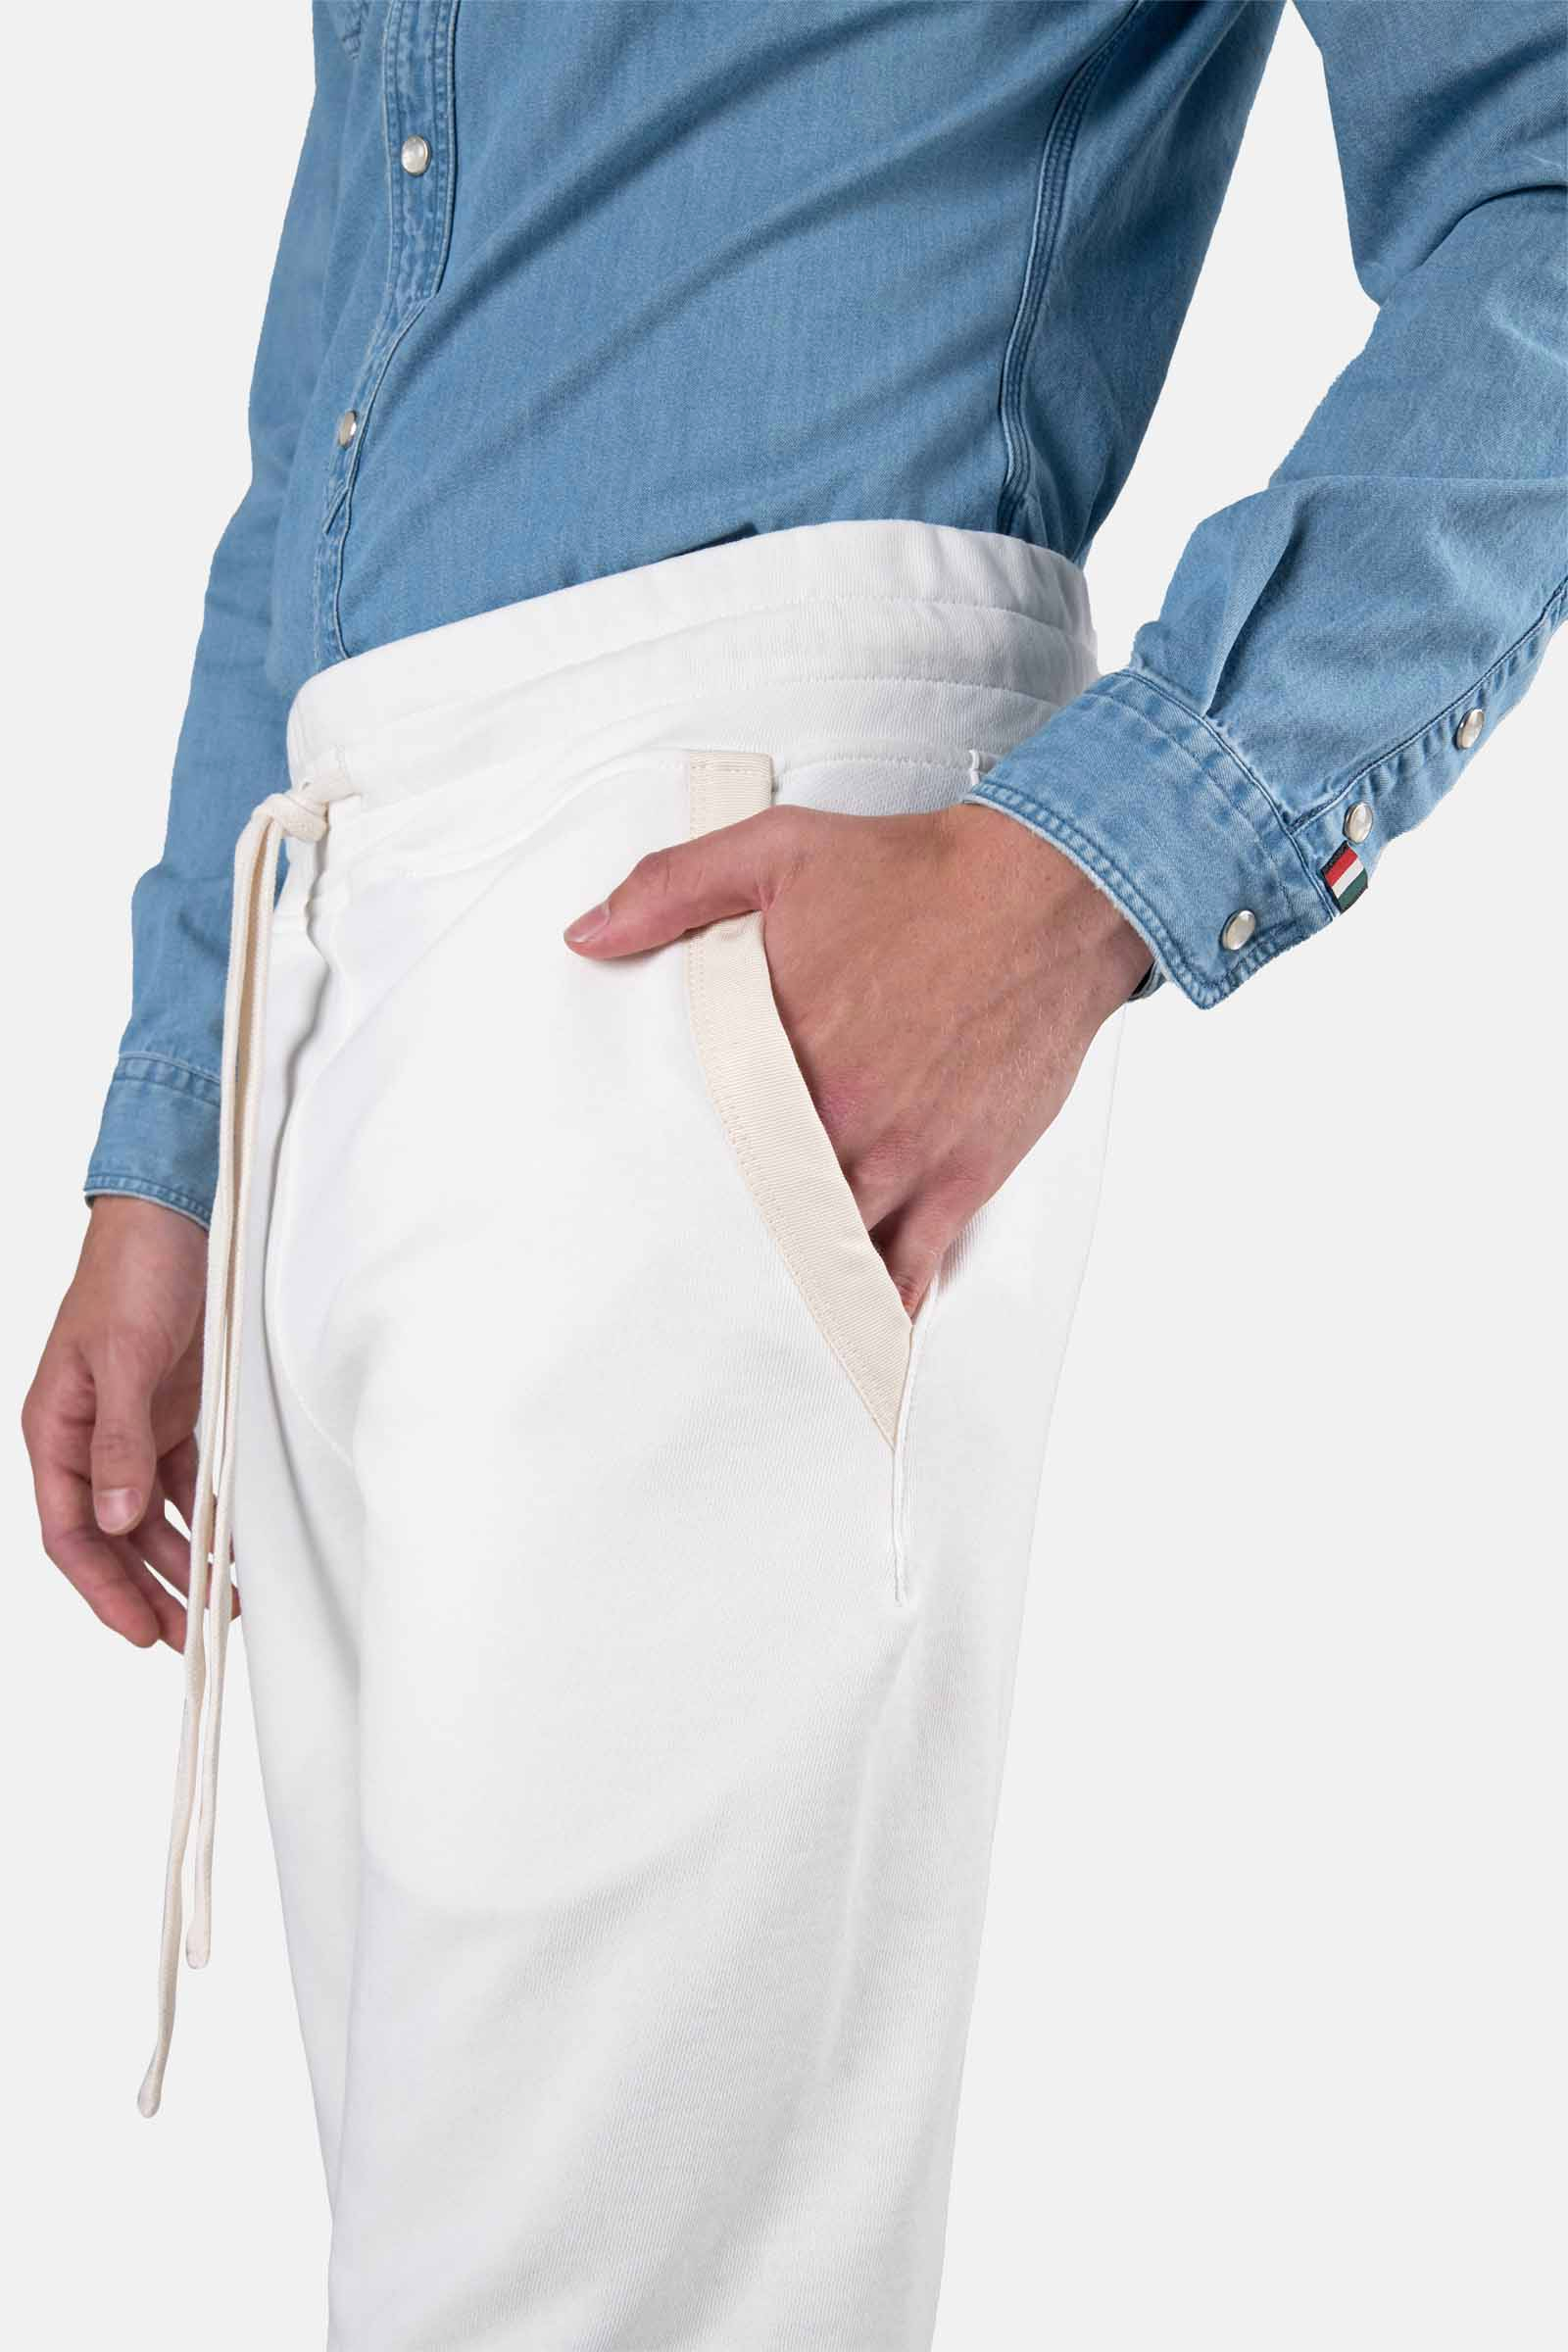 TRACK PANTS - WHITE - Hydrogen - Luxury Sportwear